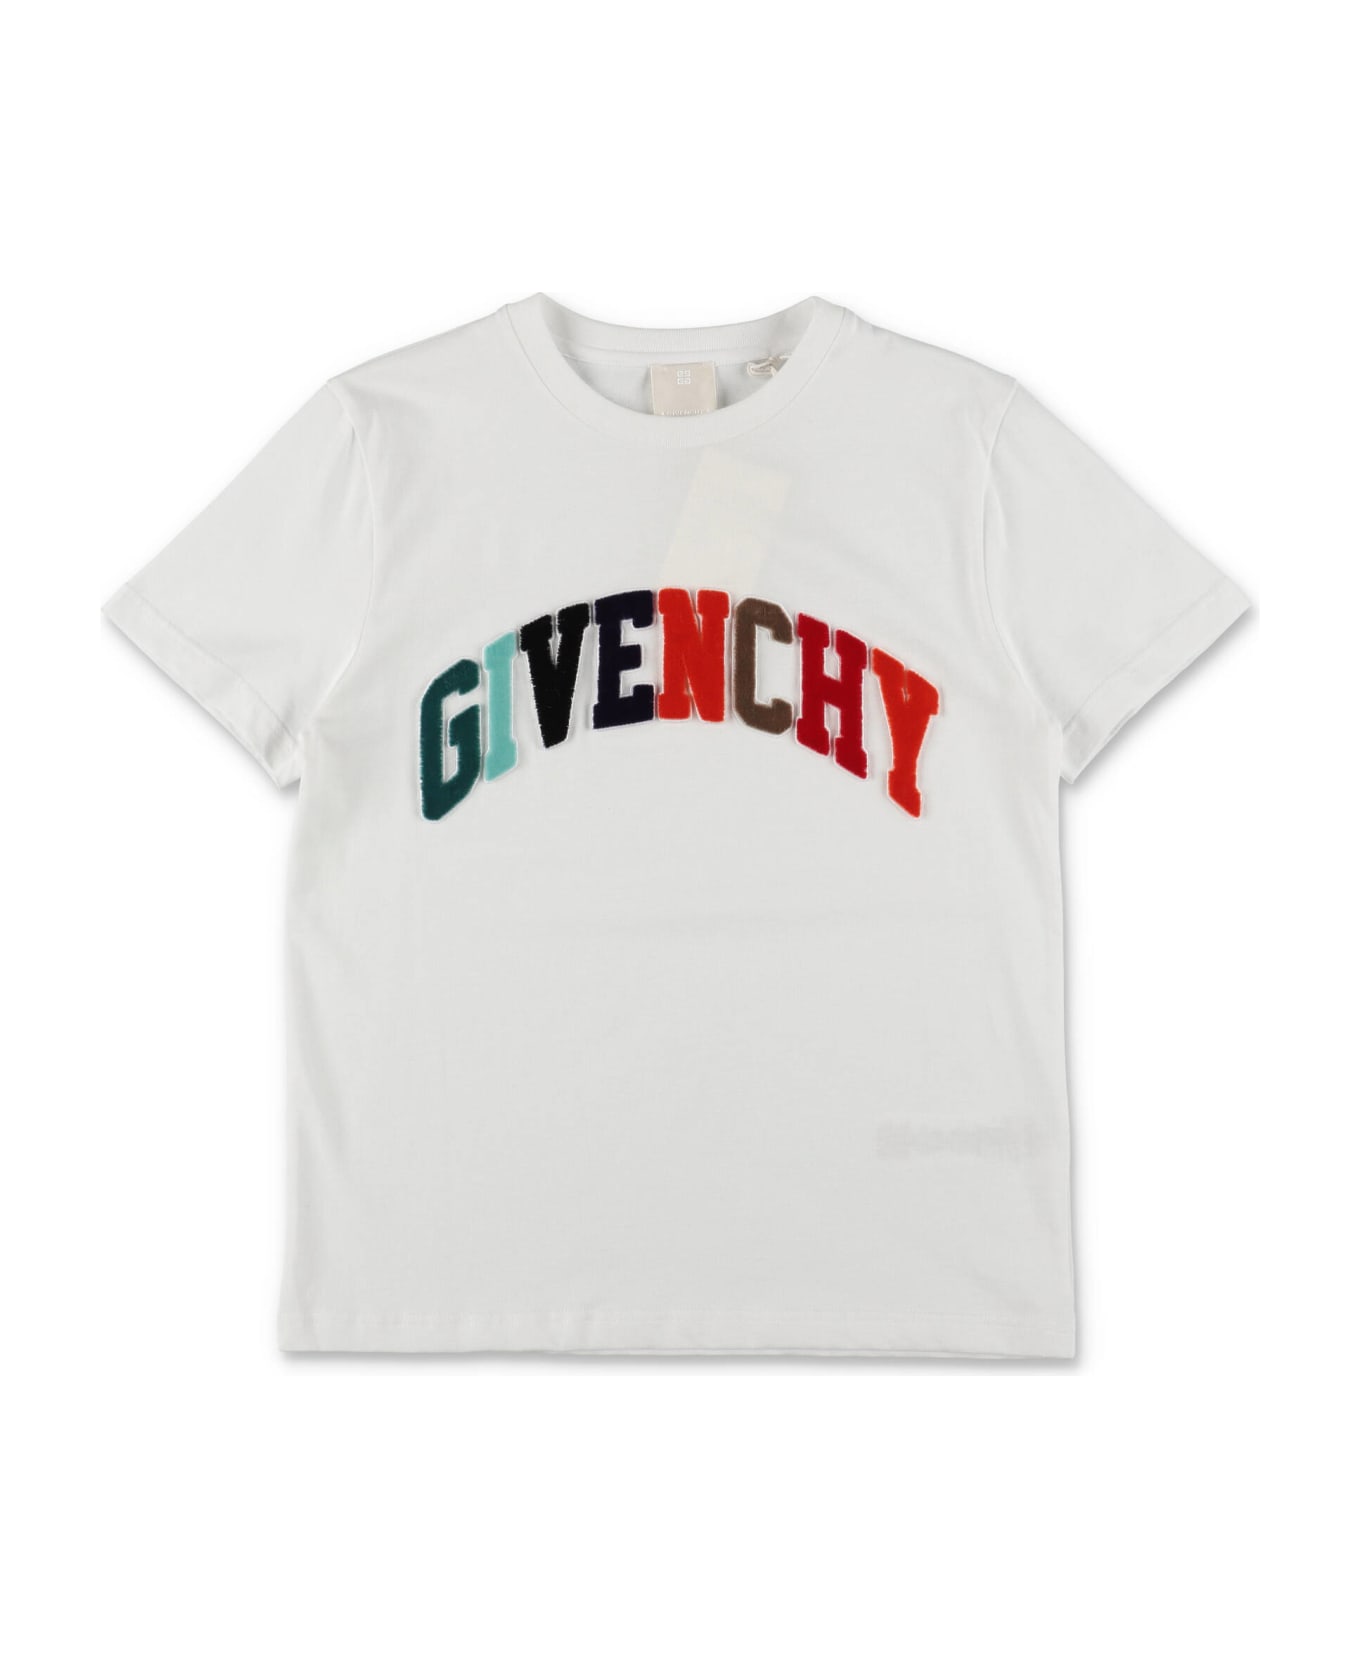 Givenchy T-shirt Bianca In Jersey Di Cotone Bambino - Bianco